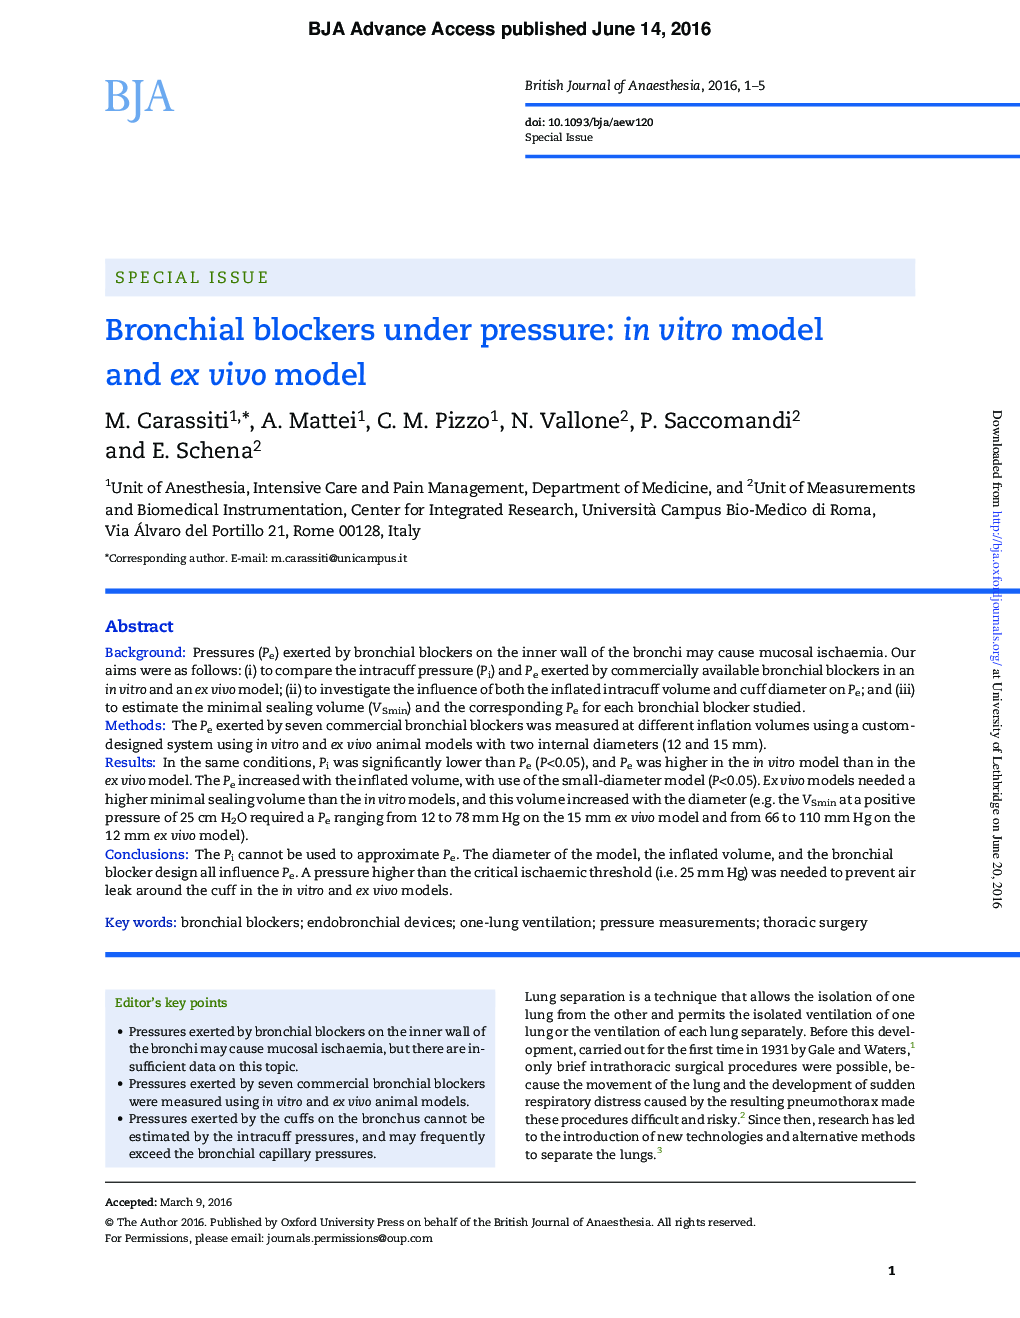 Bronchial blockers under pressure: in vitro model and ex vivo model